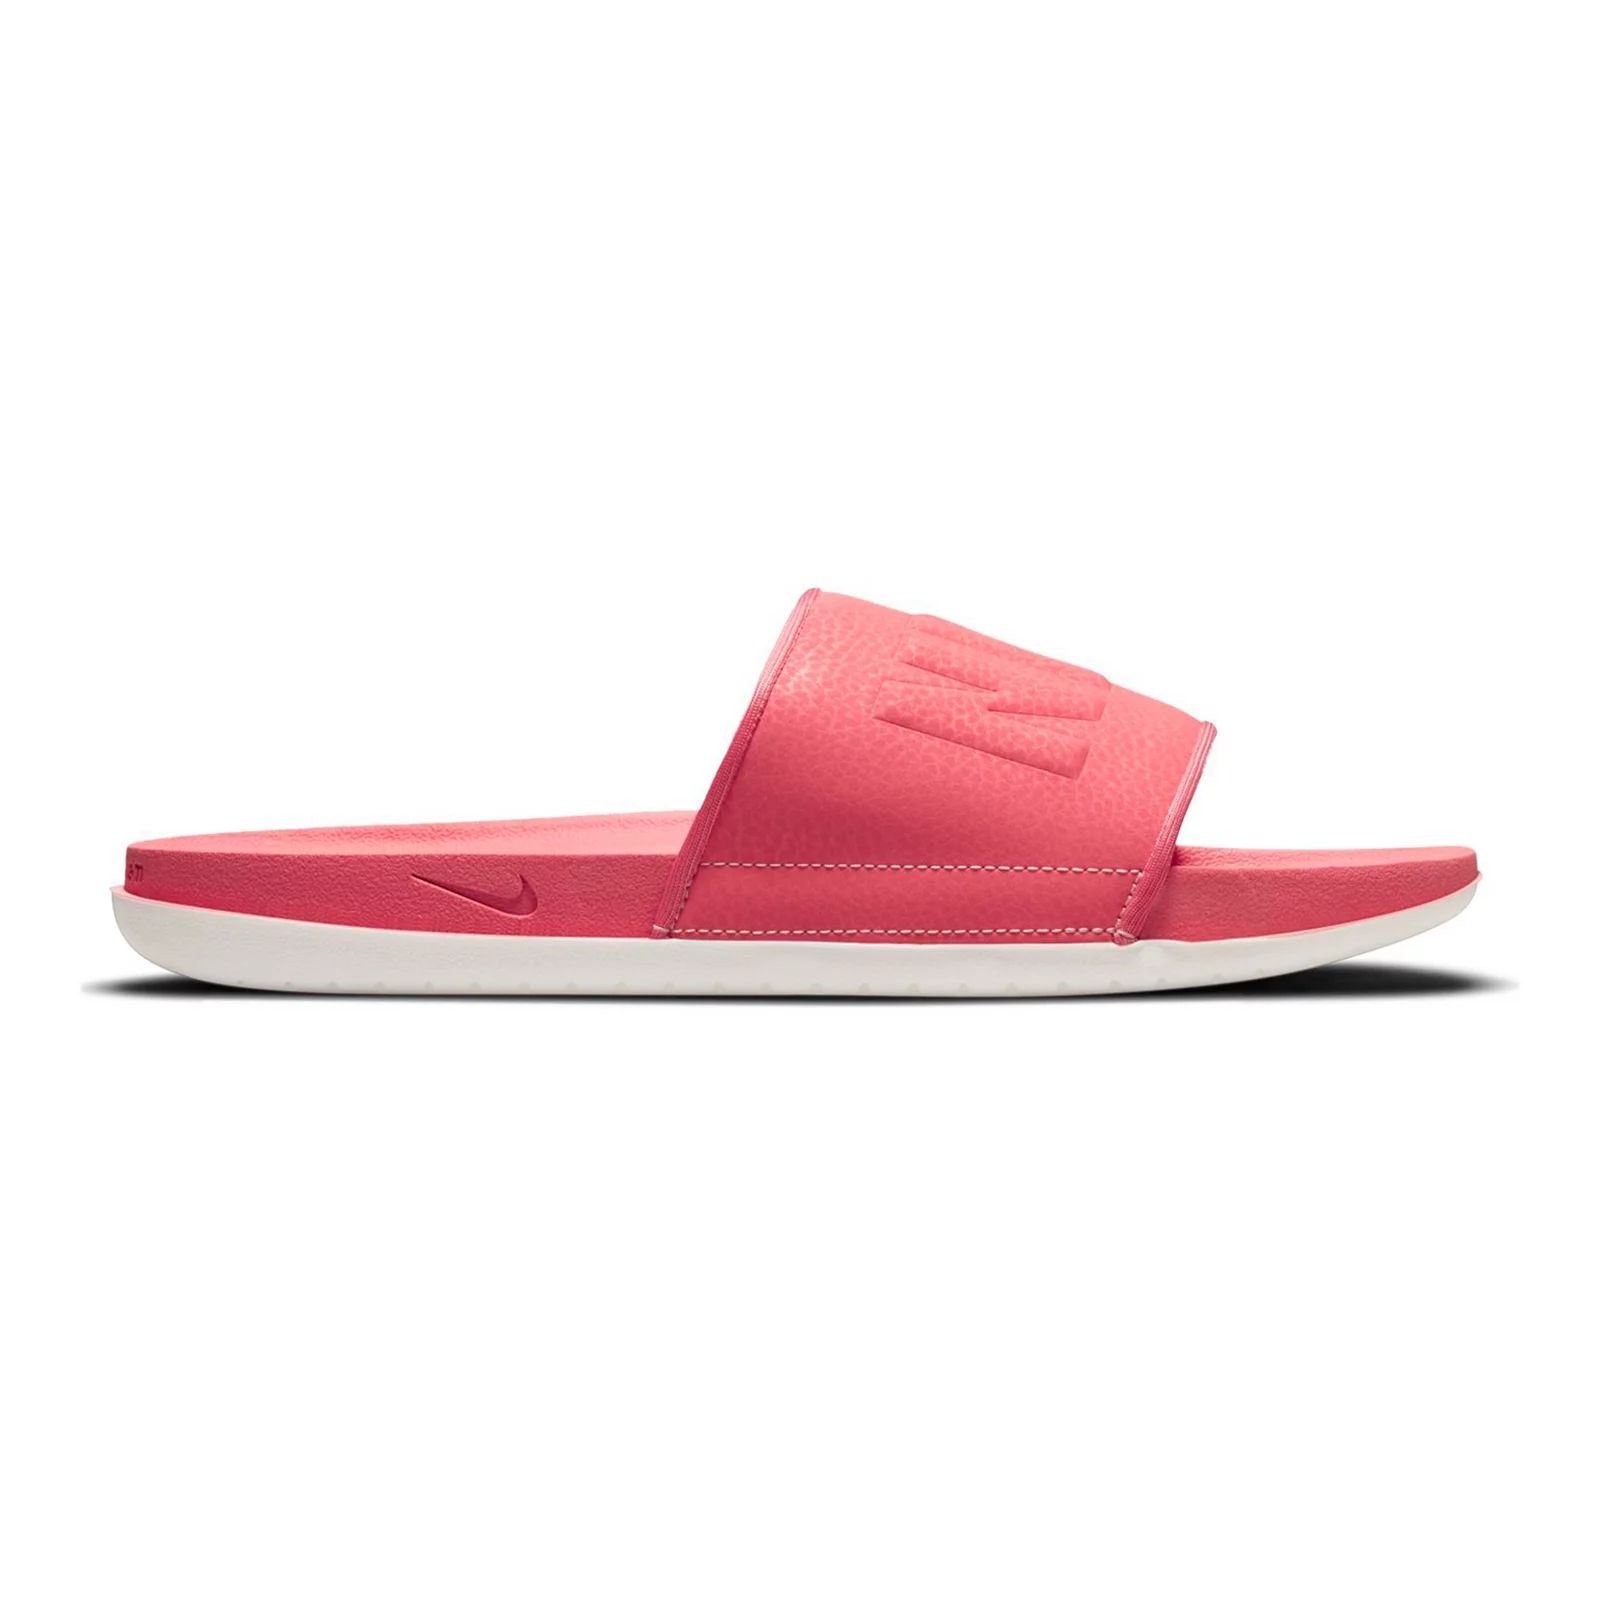 Nike Offcourt SE Women's Slide Sandals, Size: 8, Dark Red | Kohl's